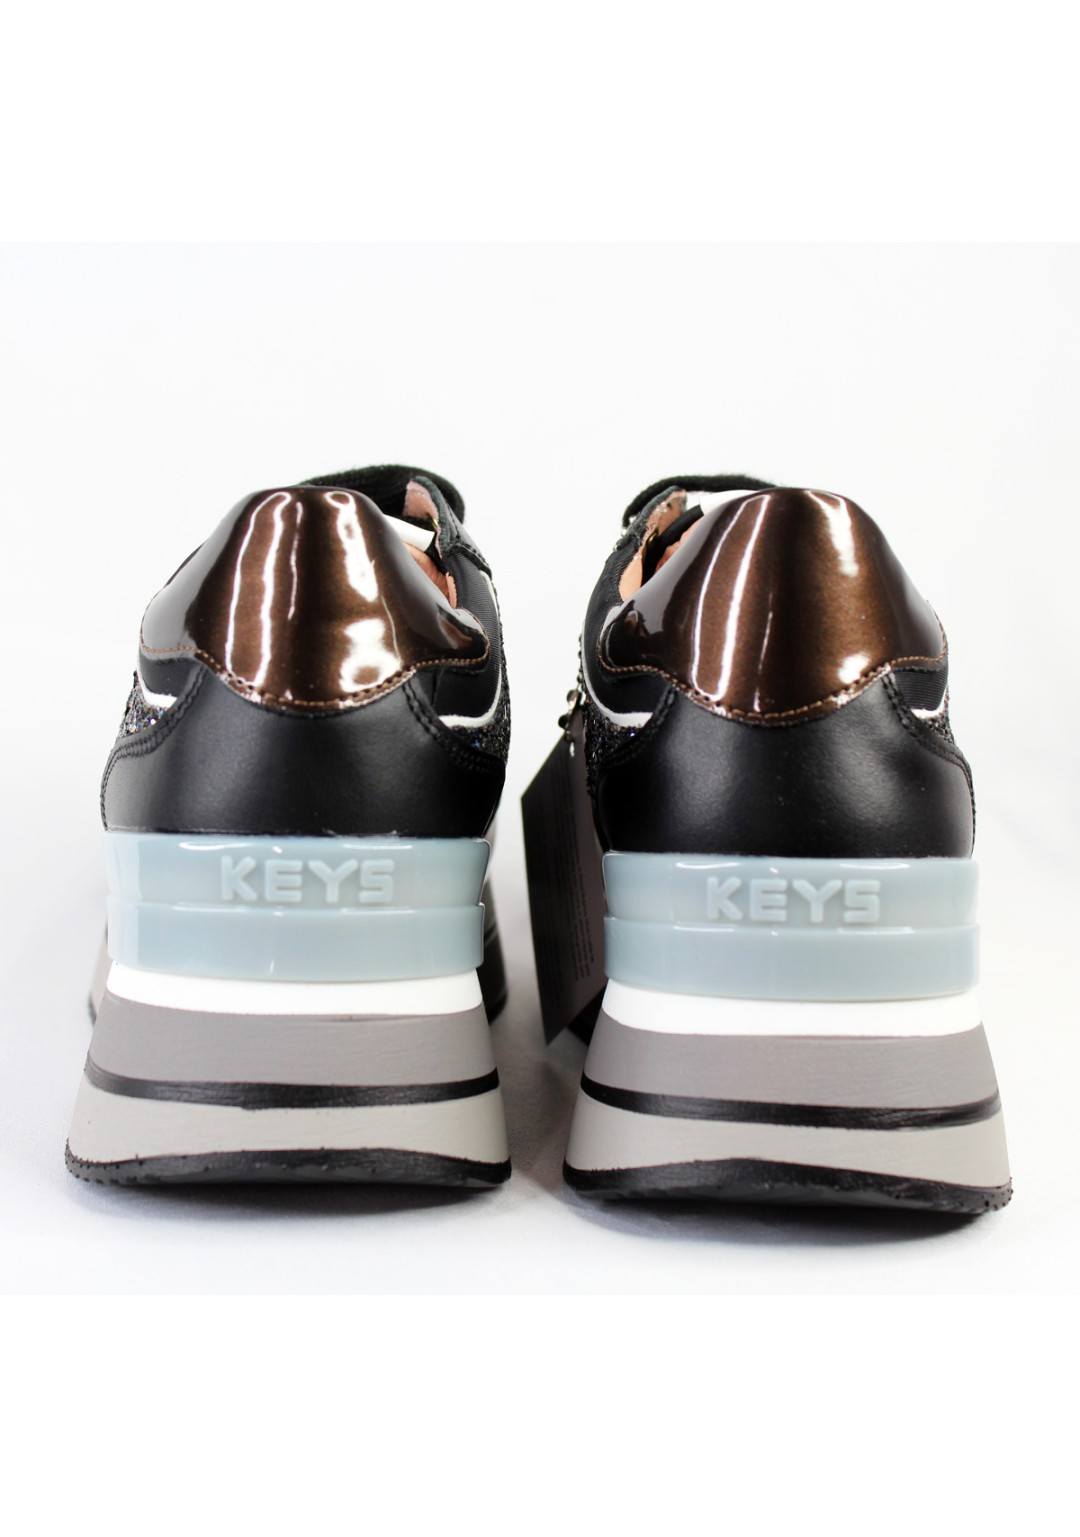 KEYS - Sneaker platform - Donna - K-6883N